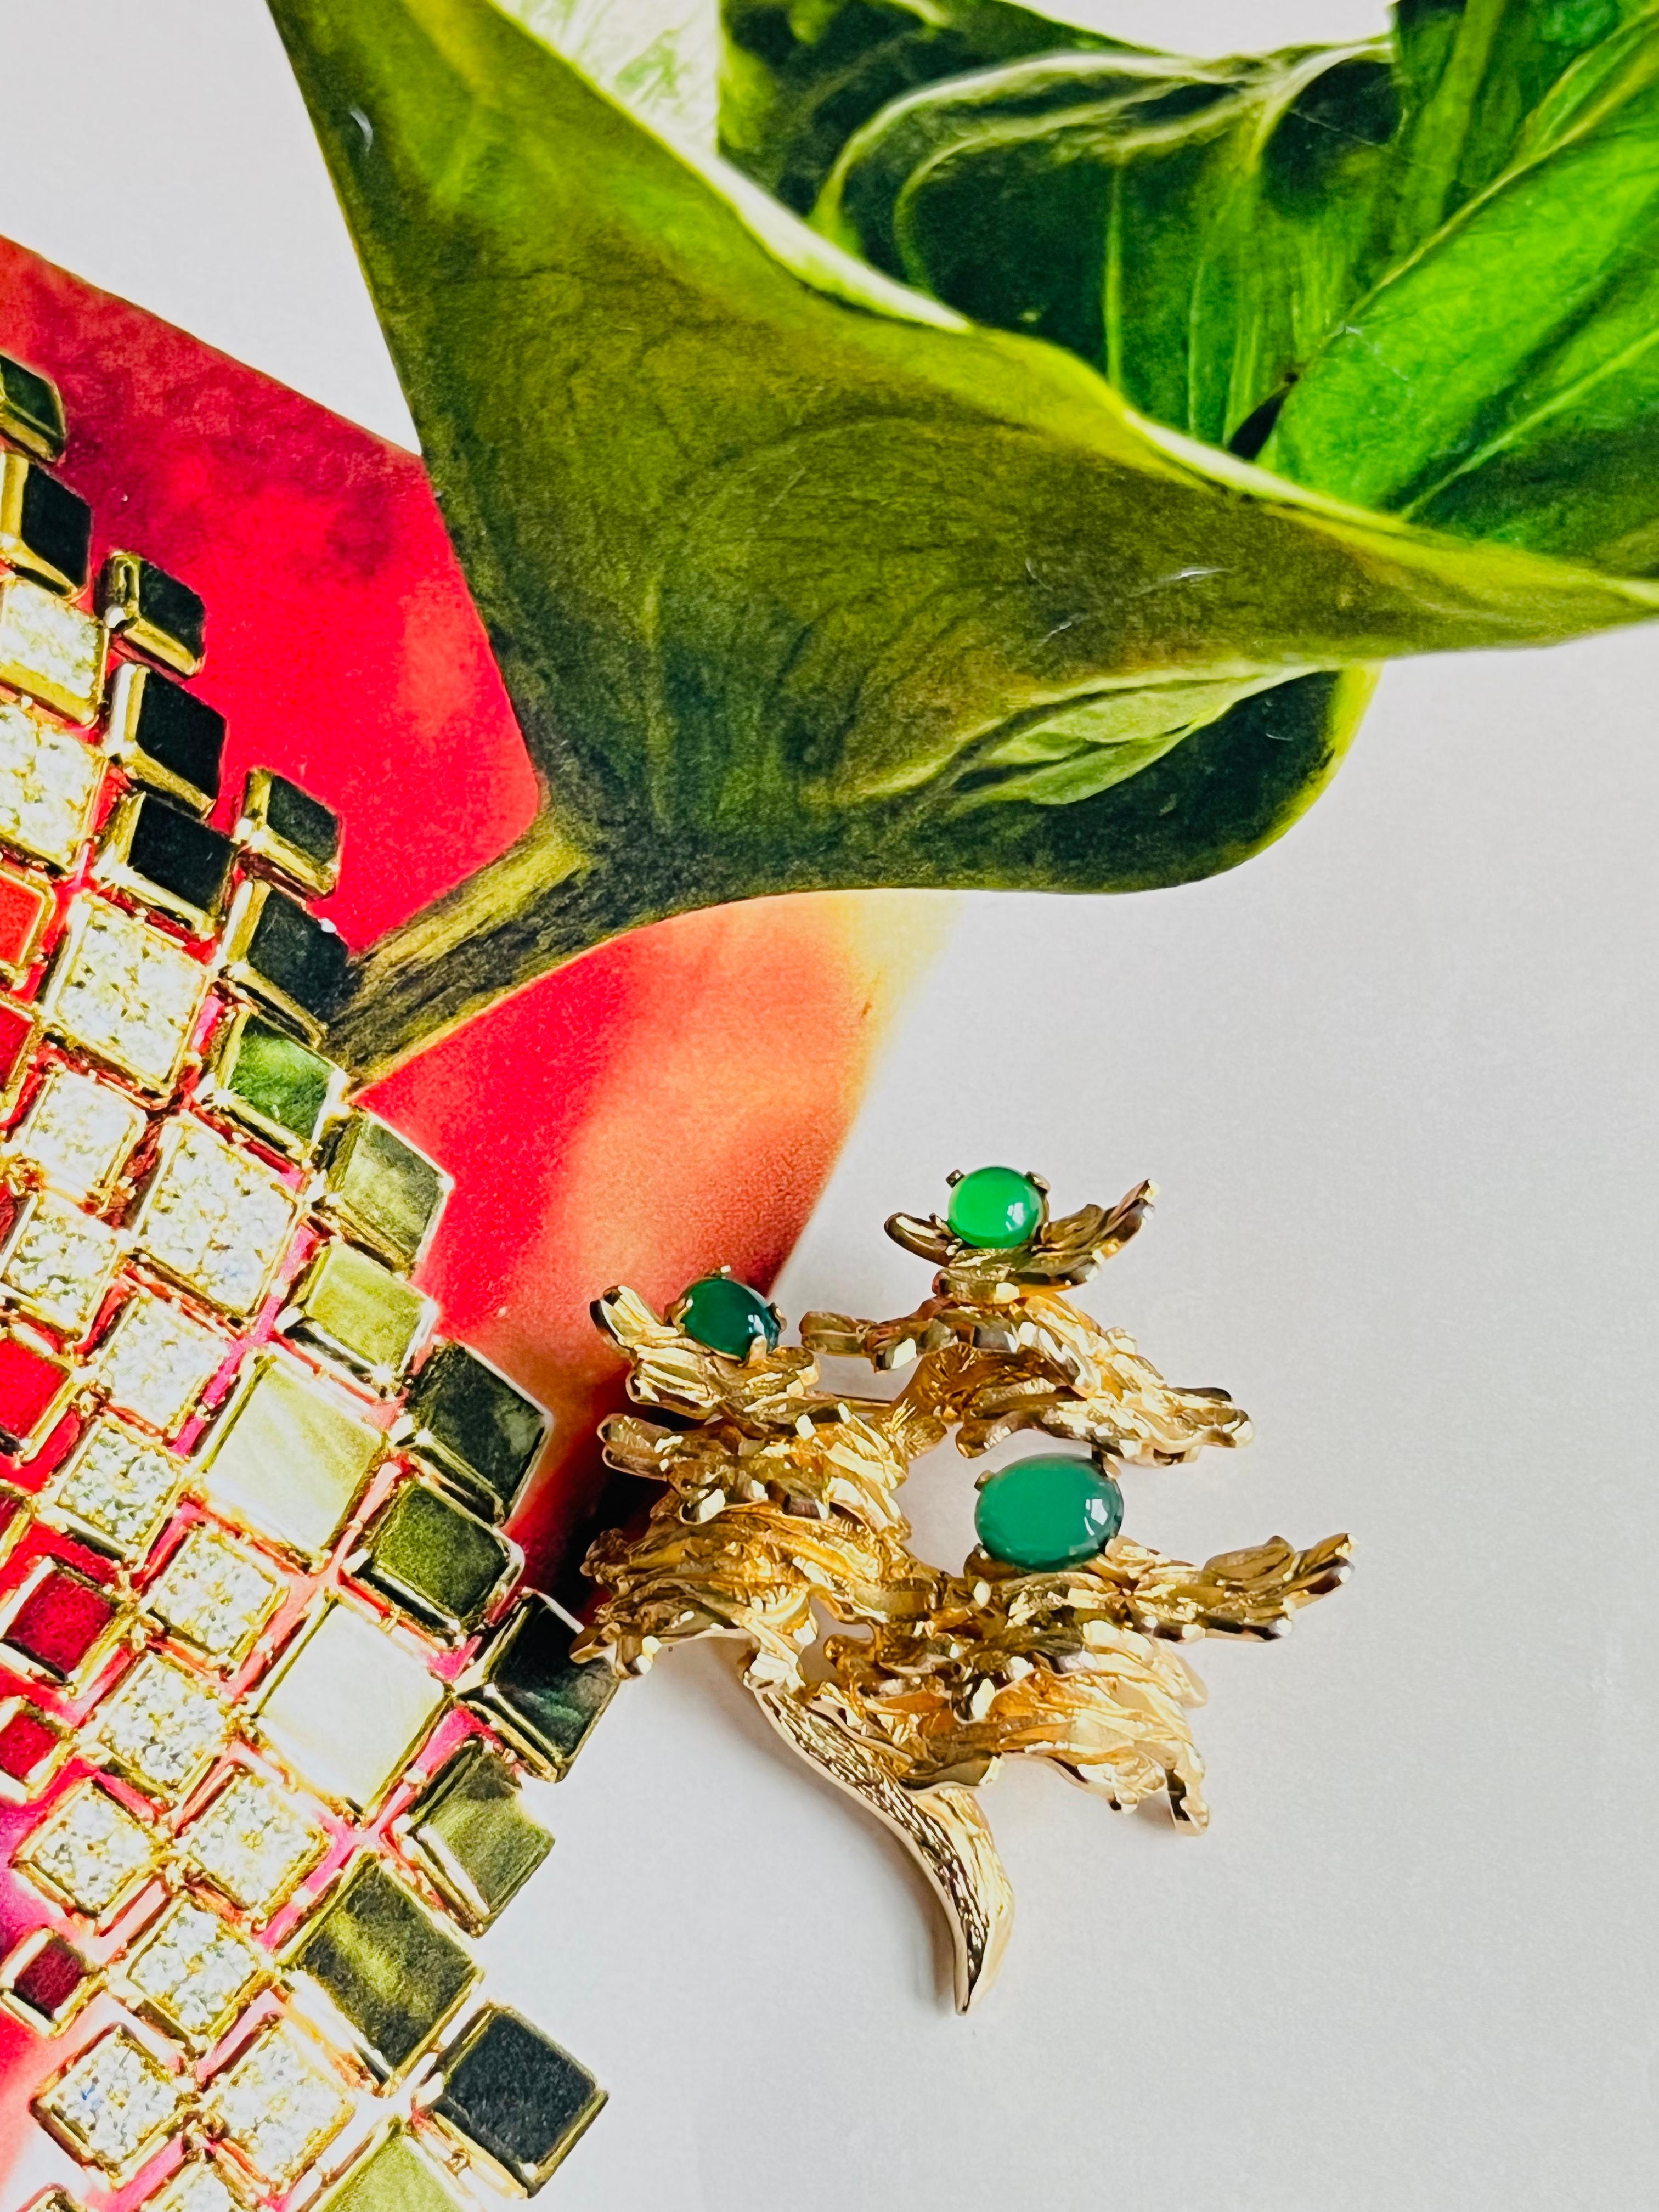 Christian Dior GROSSE 1966 Vintage Smaragd Jade Grün Blume Blatt Baum Brosche, Gold-Ton

Sehr guter Zustand. Signiert auf der Rückseite. 100% echt.

MATERIAL: Vergoldetes Metall, Steine.

Größe: 4,5 cm x 4,4 cm.

Gewicht: 16,0 g.

_ _ _

Großartig